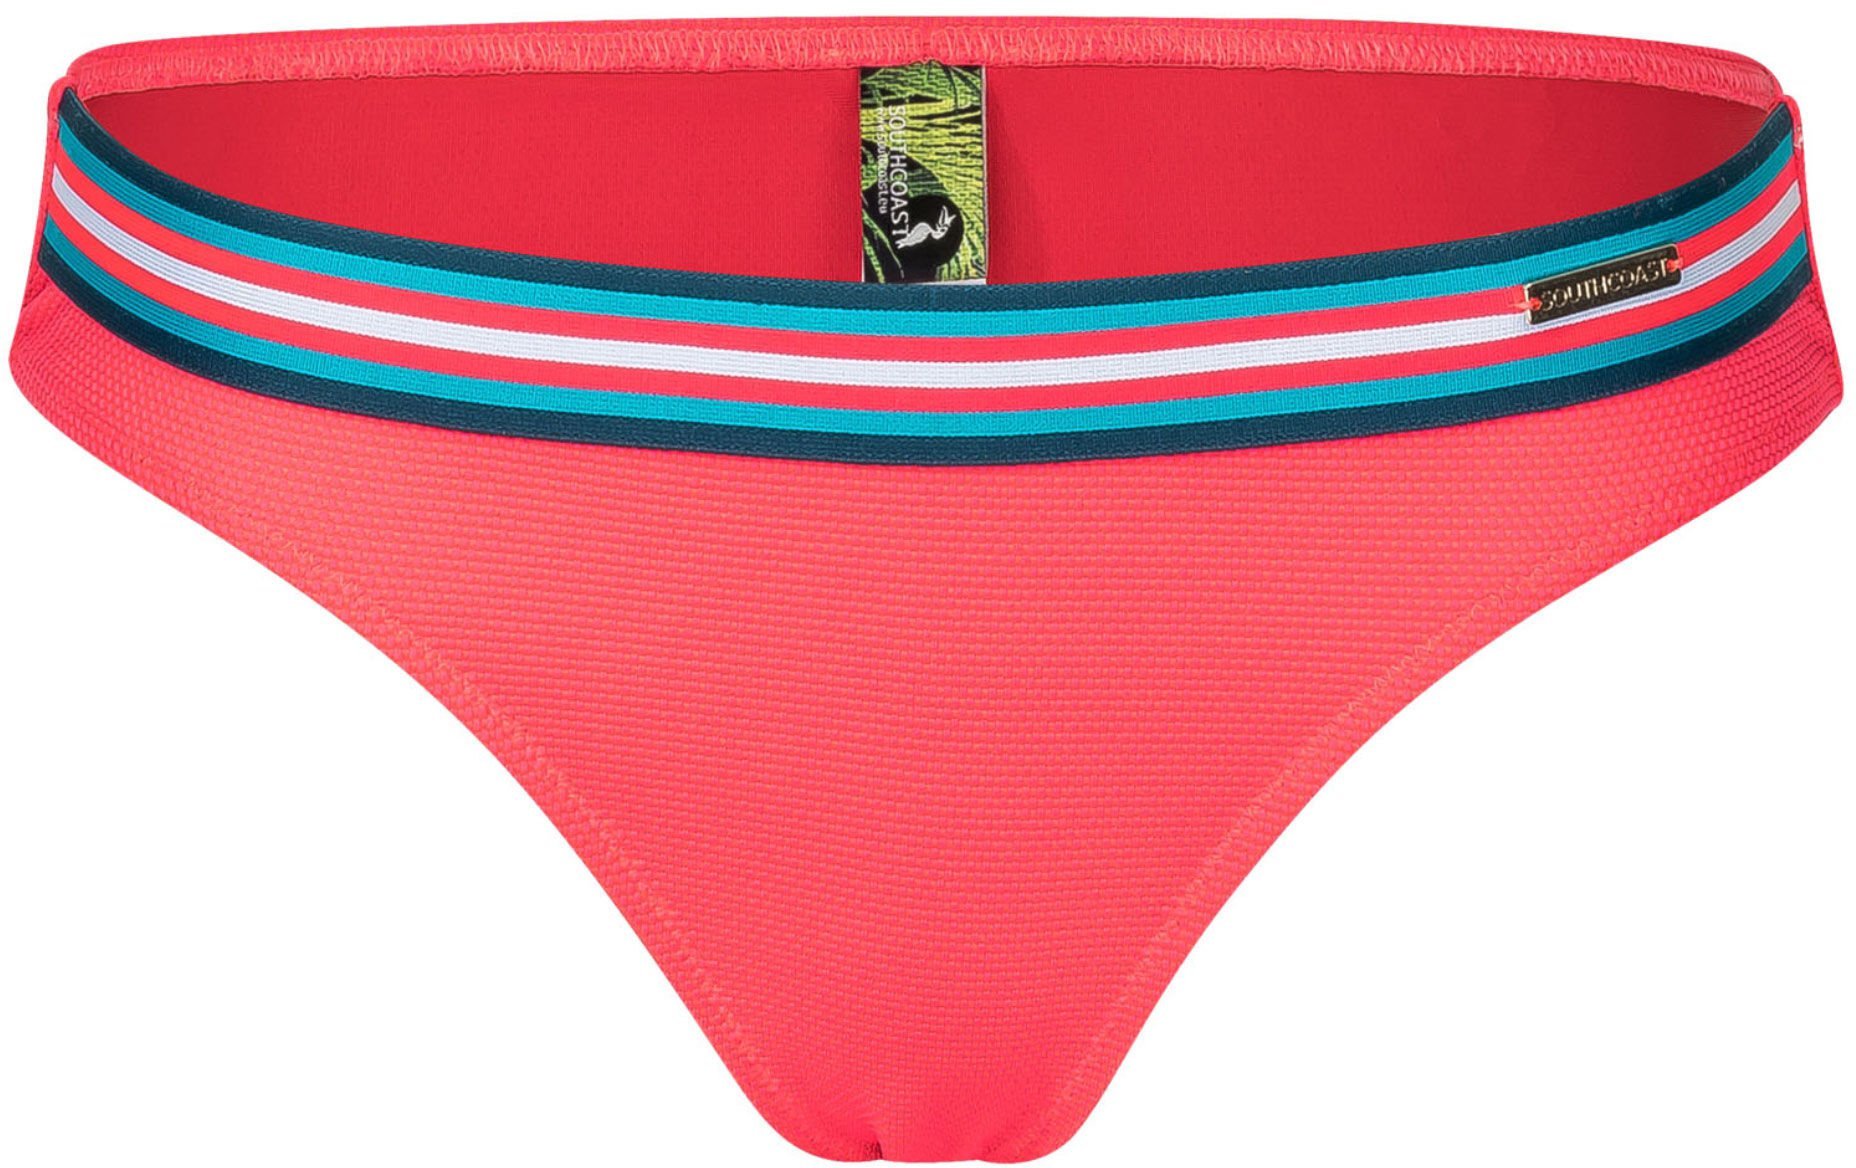 Mix & Match Bikiny Southcoast Palma Bikini Bottoms 42